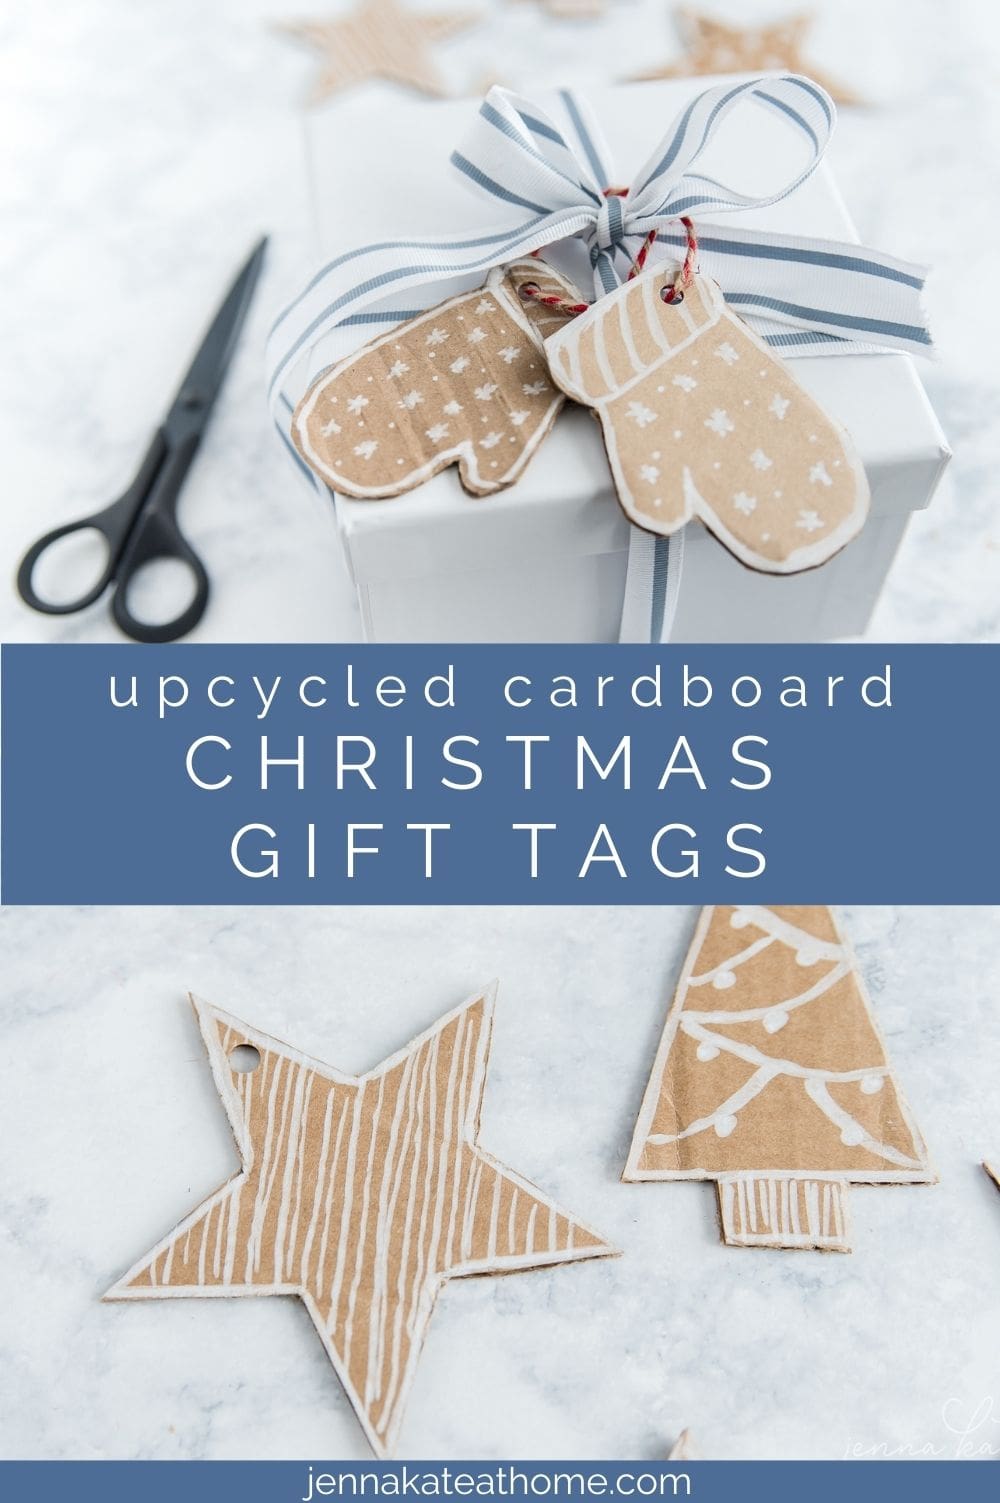 DIY Christmas gift tags